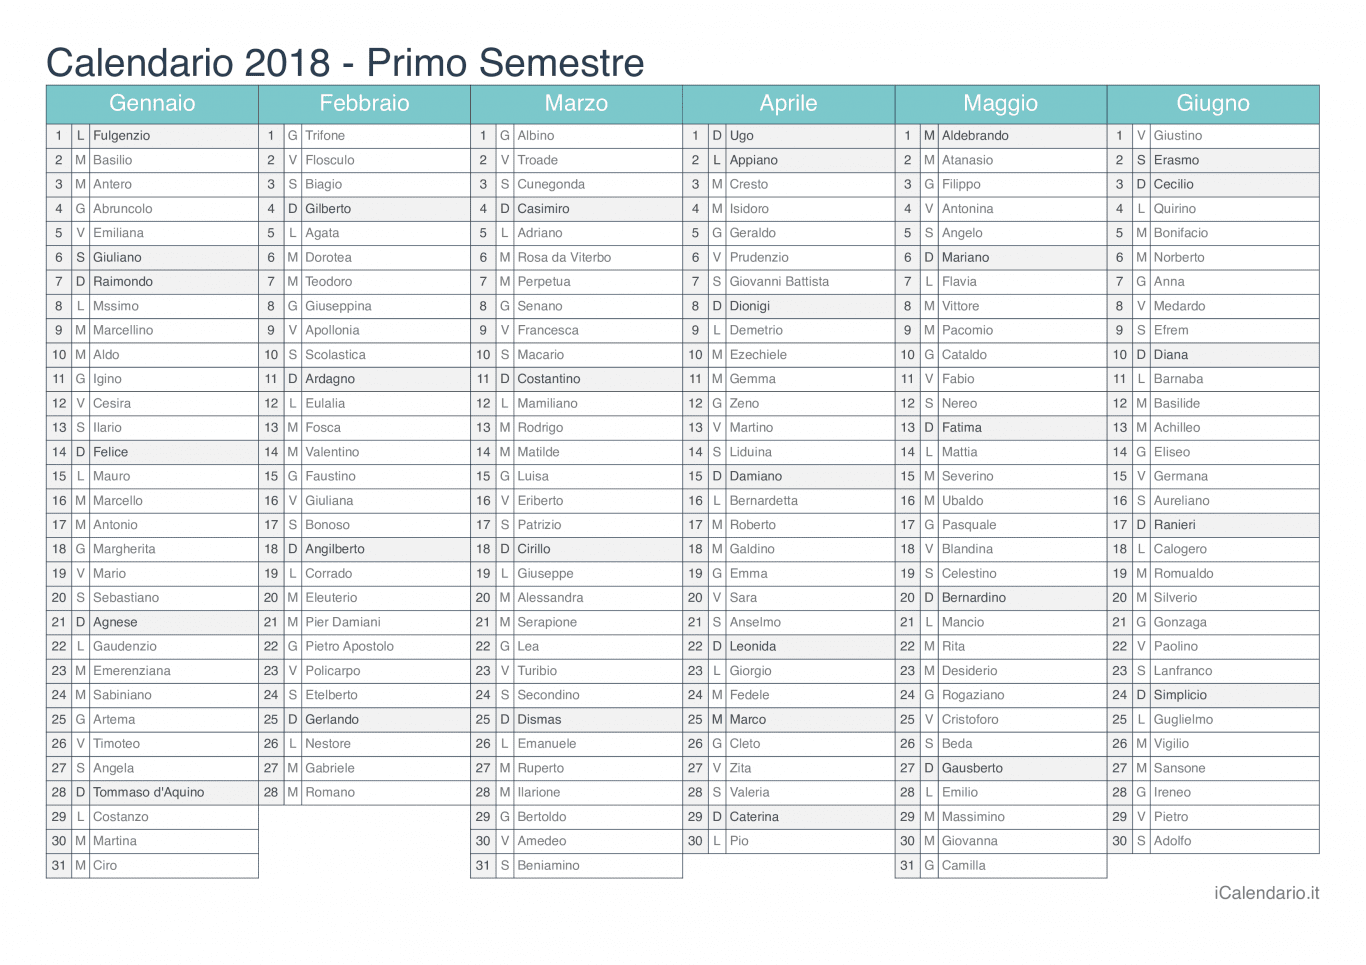 Calendario semestrale 2018 con santi e festivi - Turchese